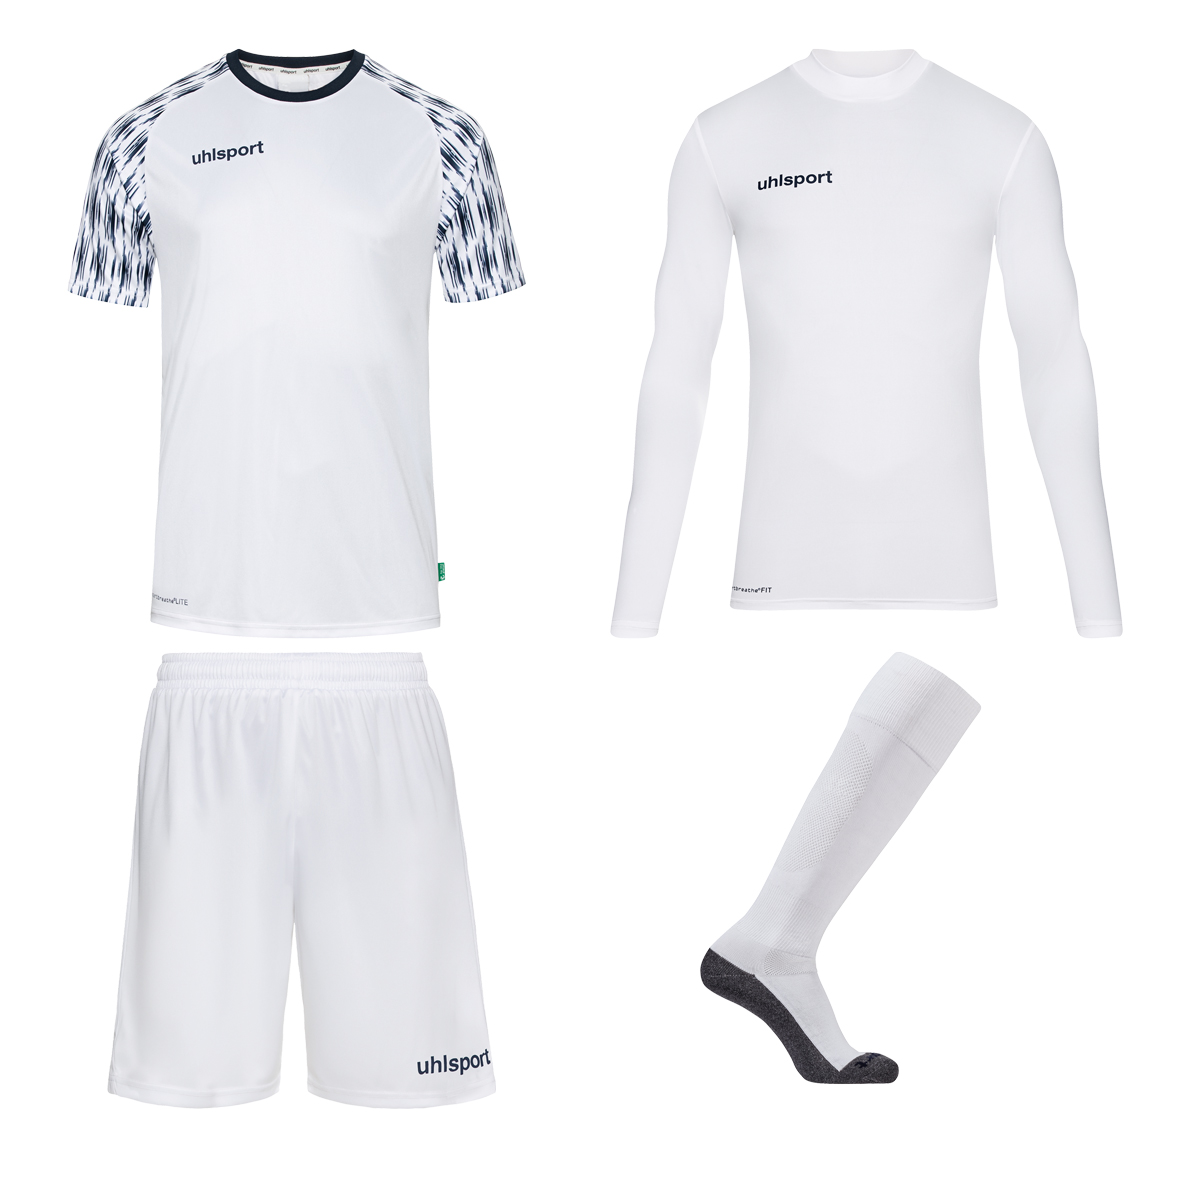 Goalkeeper clothing for women, men & children